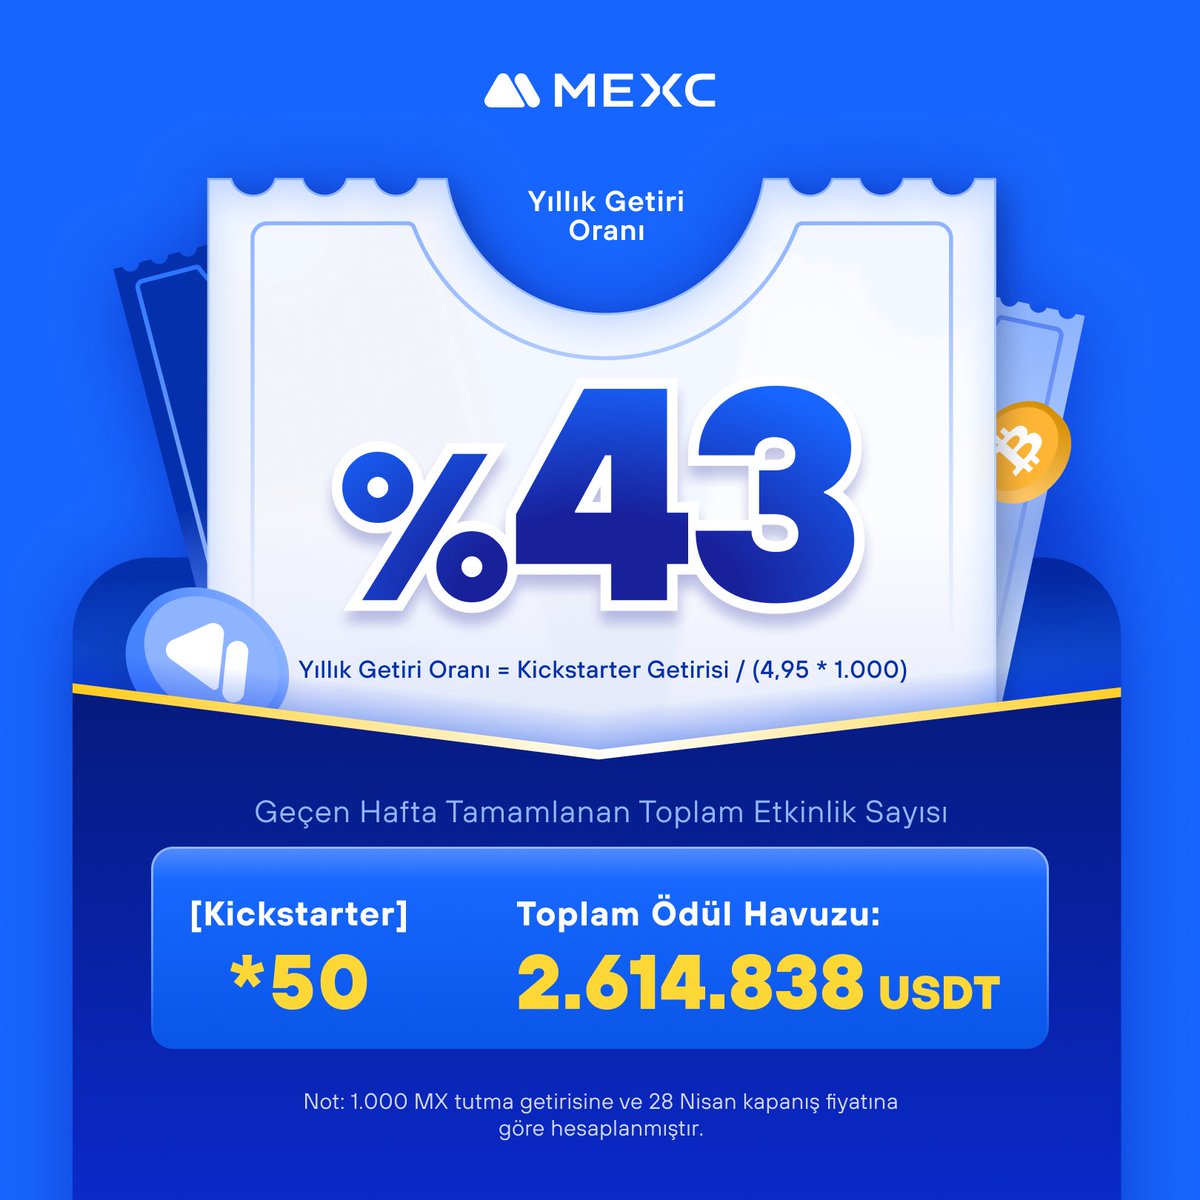 📊 Geçen hafta toplam 50 #Kickstarter etkinliği tamamlandı ve %43'e varan yıllık getiri oranı sağlandı. 

📌Ayrıntılar >> mexc.com/tr-TR/mx 

#MEXCTürkiye #MXToken #MX #BTC